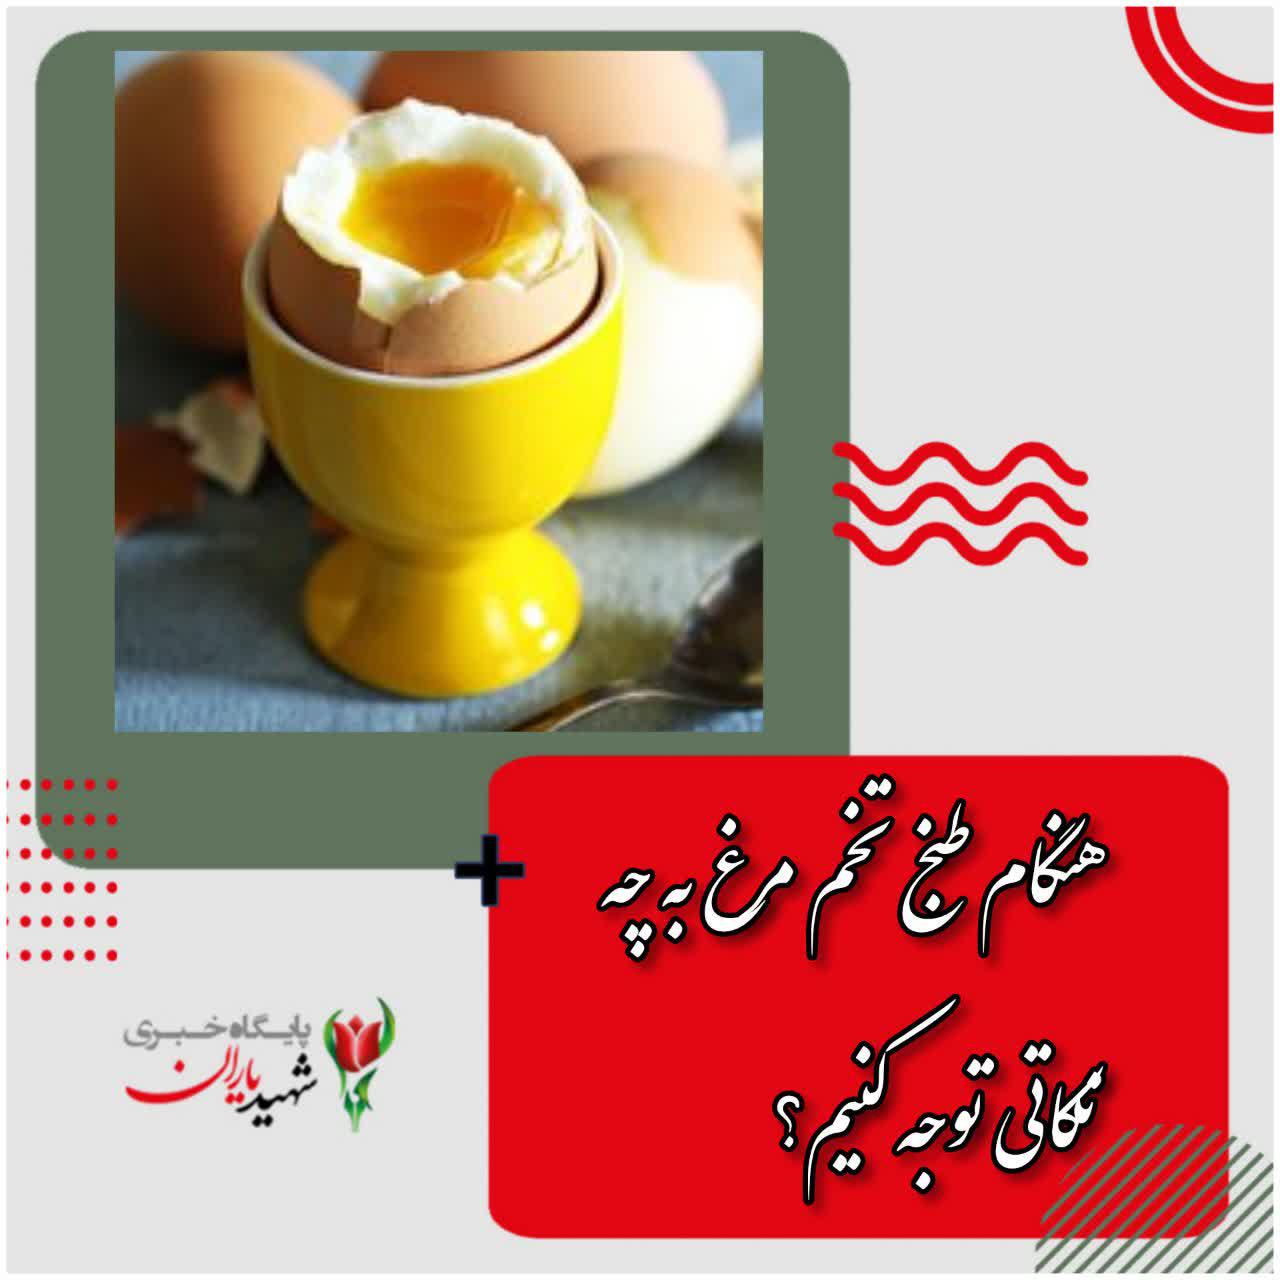 هنگام طبخ تخم مرغ به چه نکاتی توجه کنیم؟